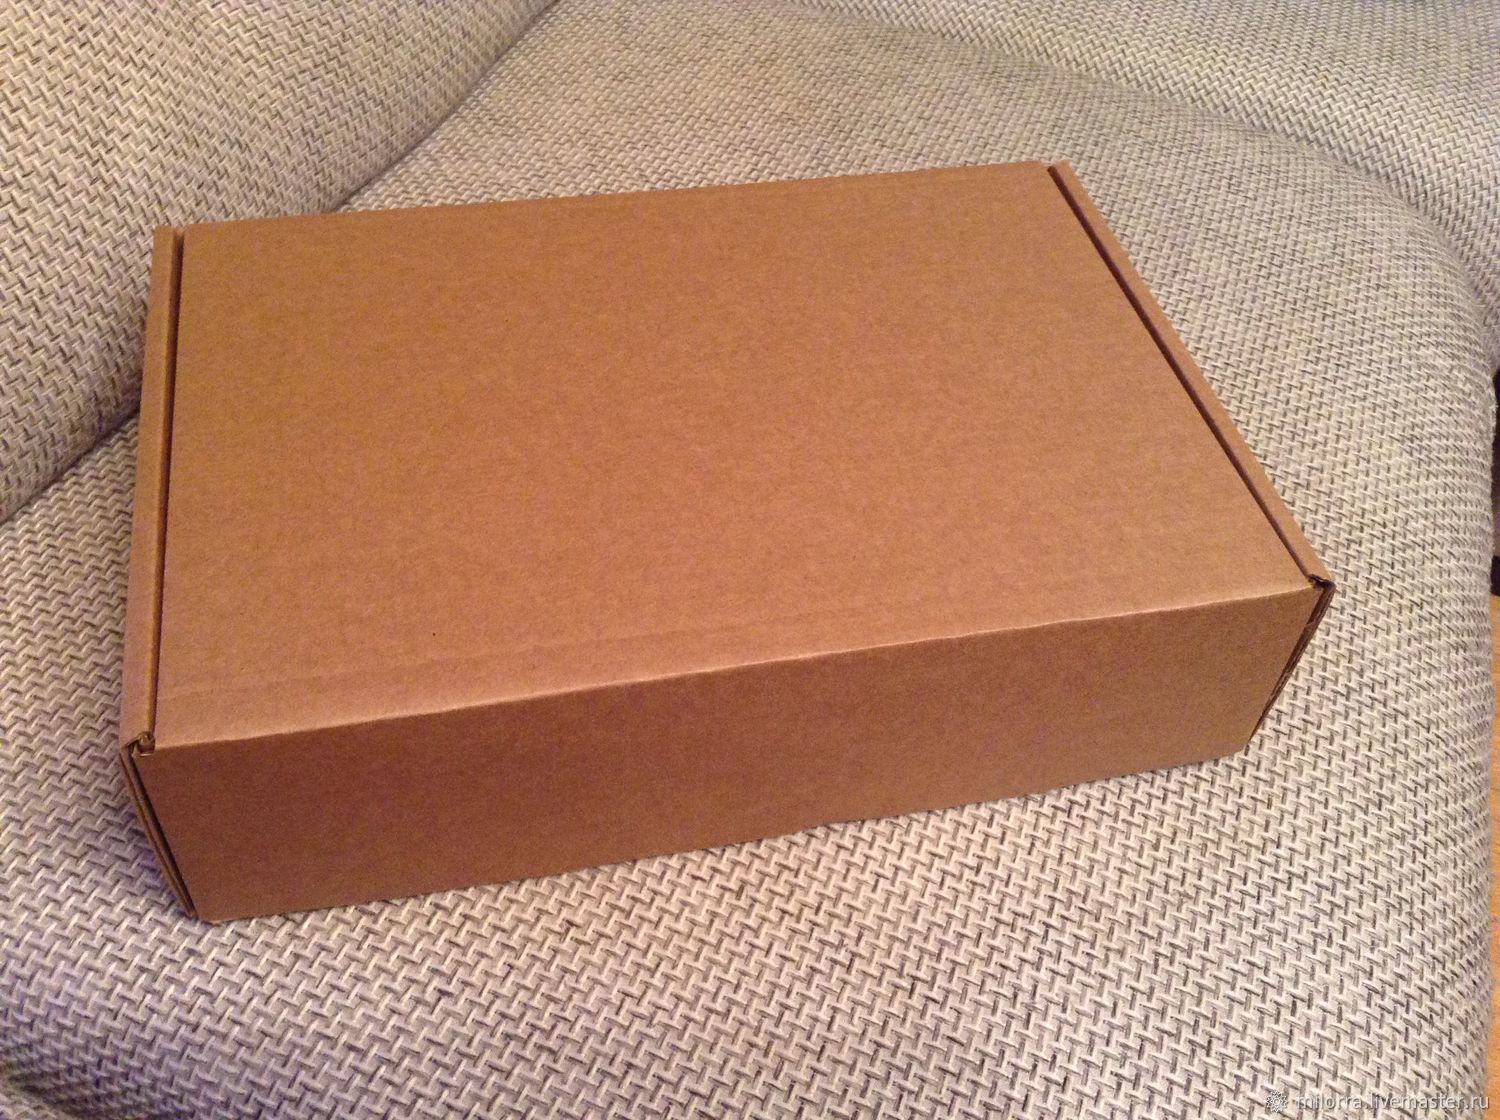 Размер коробки а5. Коробка 190х150х40 крафт. Коробка картонная самосборная 5х10,5х5 см. Коробка самосборная крафт 10х10х10см. Коробка подарочная «Zand» m, крафт, самосборная, 23,5 х 17,5 х 6,3 см, картон.